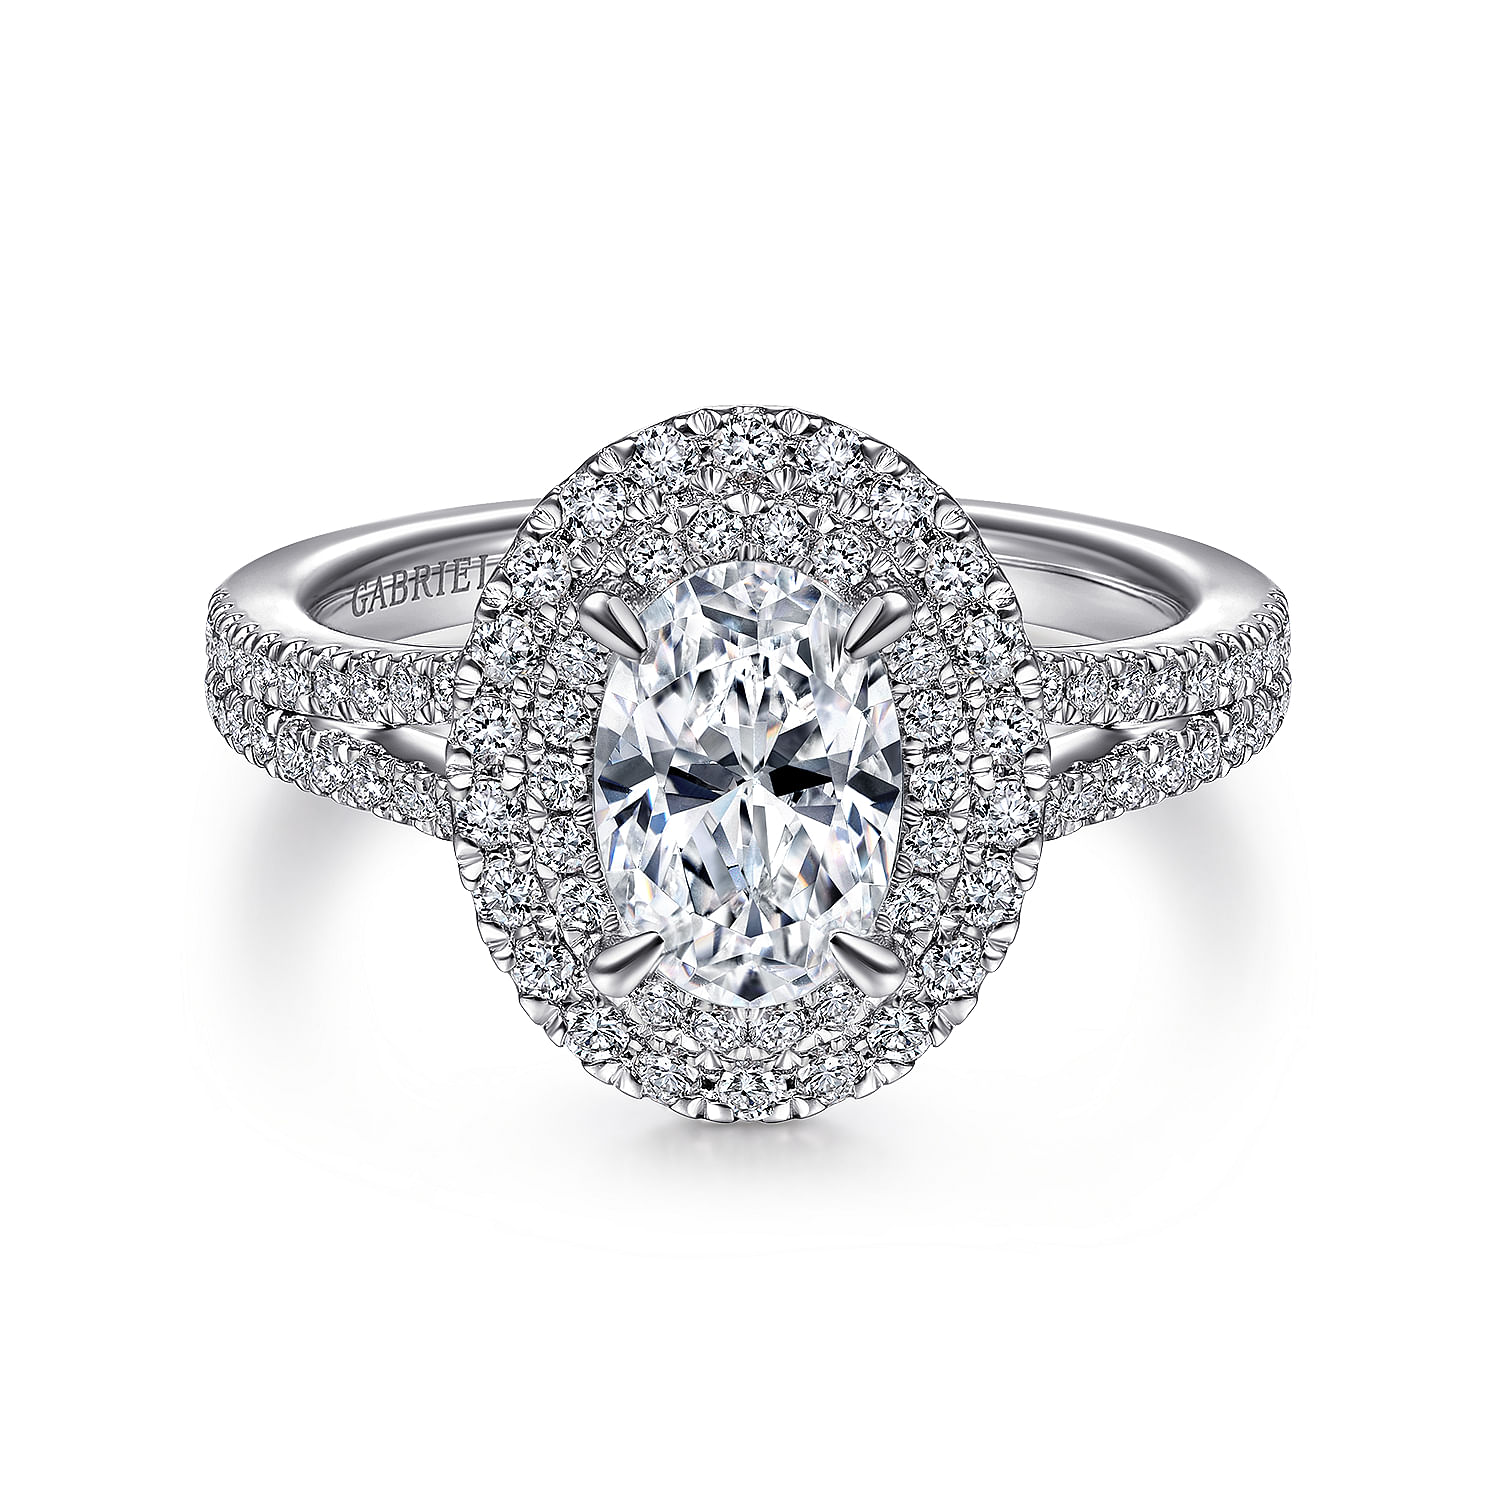 Bette - 14K White Gold Oval Diamond Engagement Ring